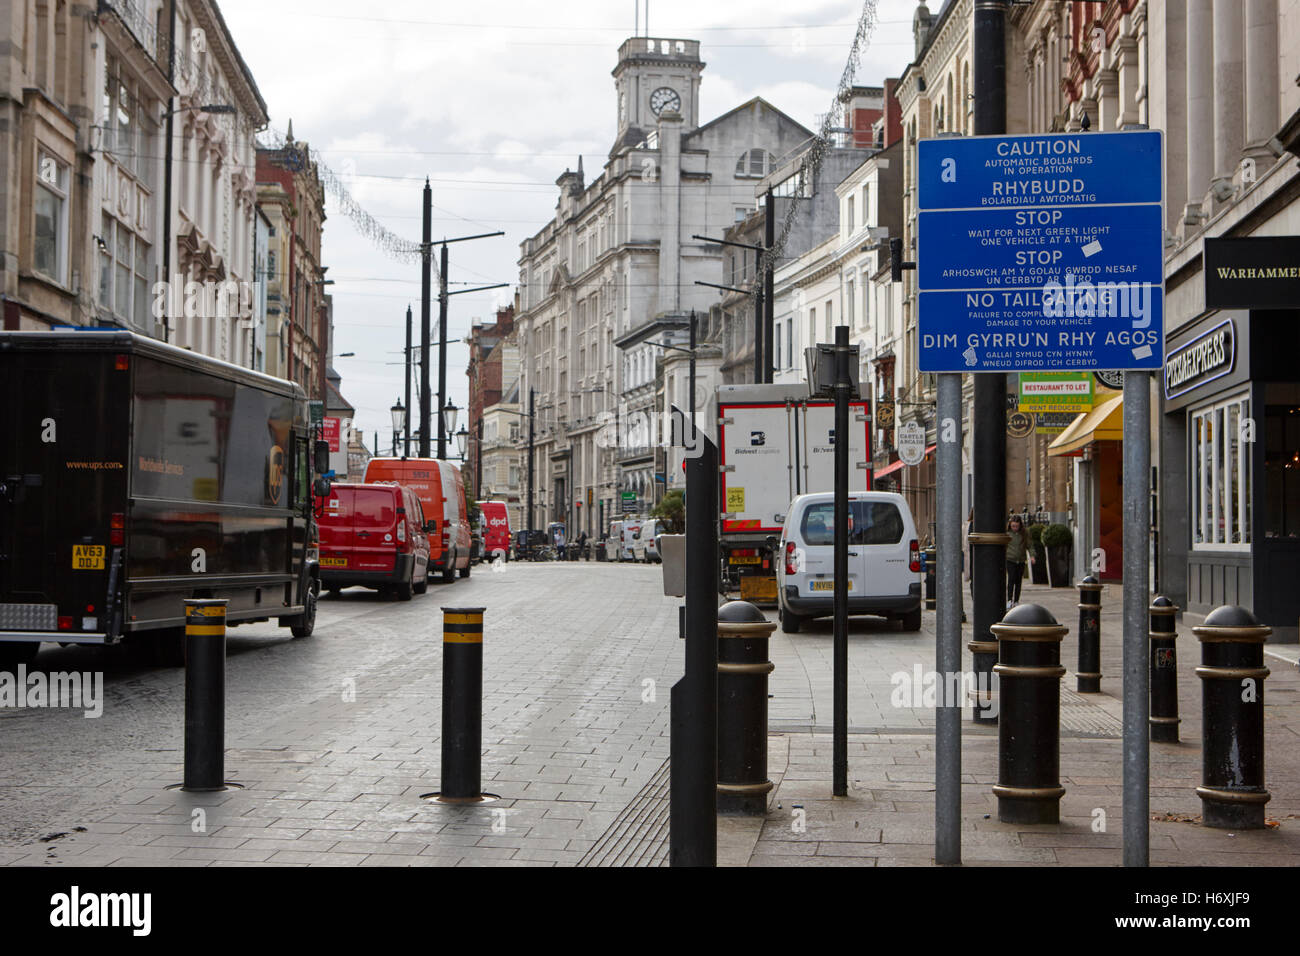 Traffico automatico bitte in Cardiff high street city center precinct Galles Regno Unito Foto Stock